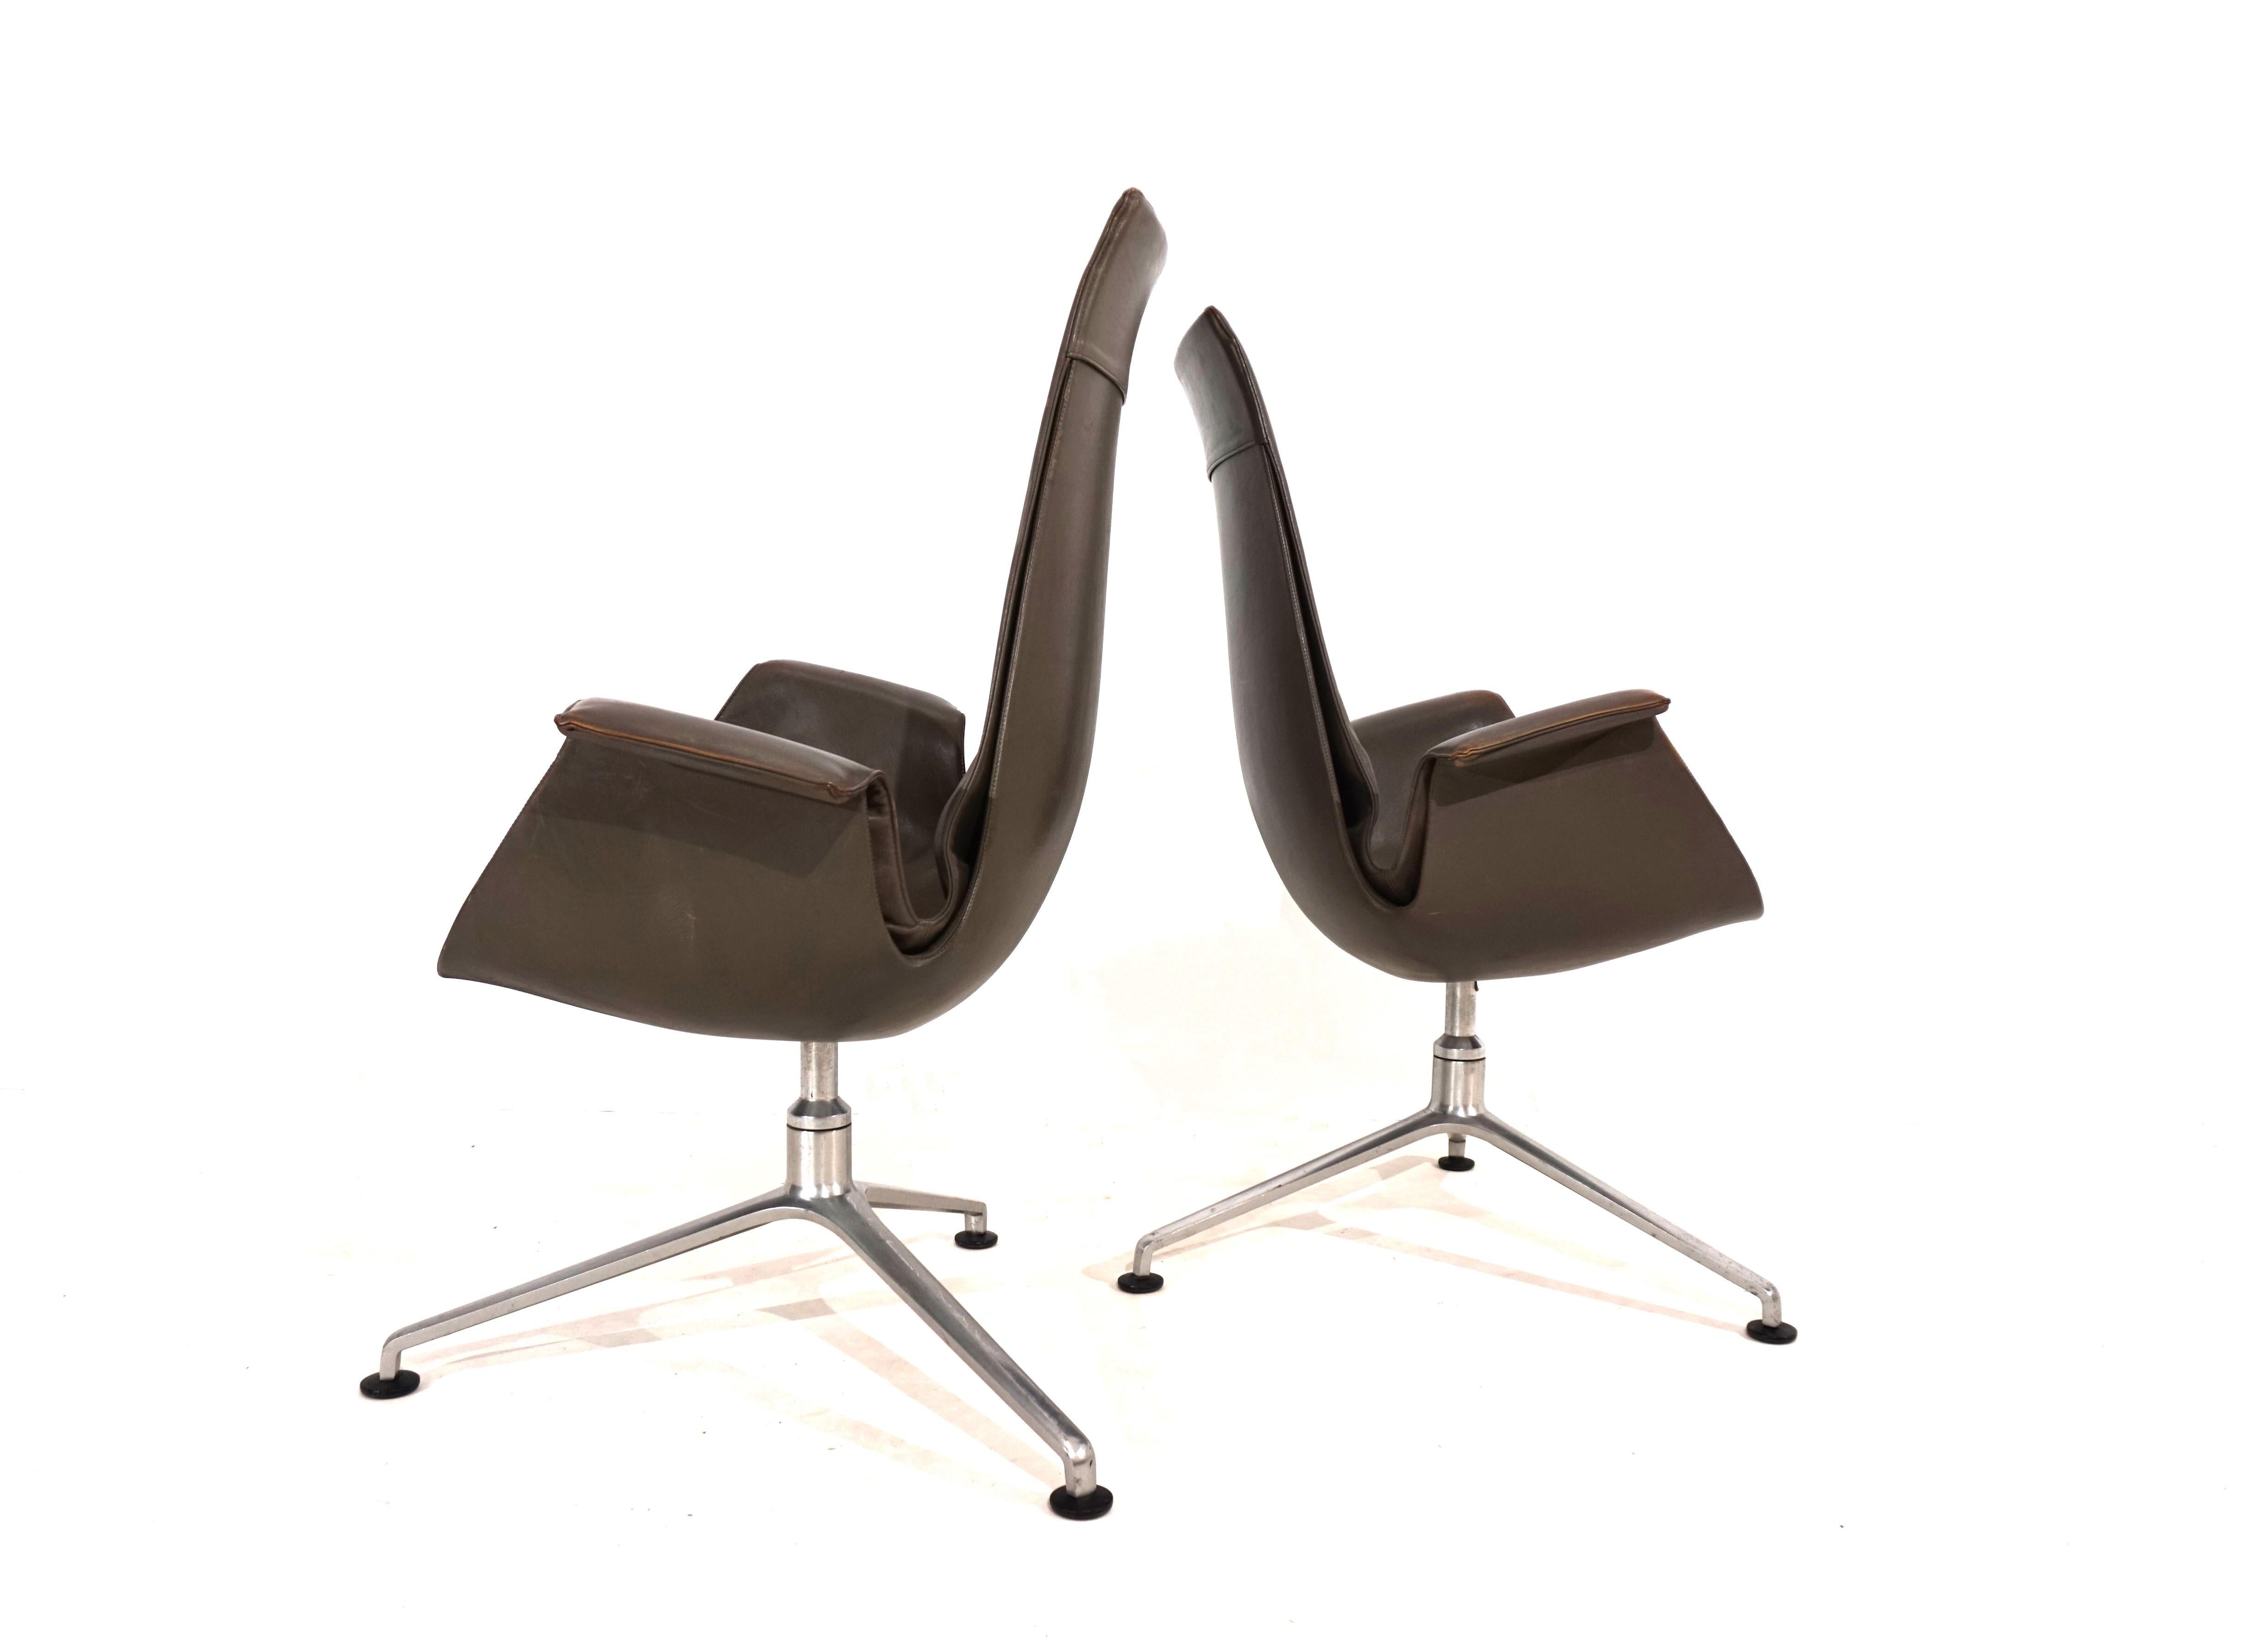 Dieses Paar eleganter FK 6725 Bird Stühle mit hoher Rückenlehne ist in sehr gutem Zustand. Das taupefarbene Leder der Stühle weist kaum Gebrauchsspuren auf und hat an den Armlehnen eine charmante Patina. Die typischen Stativrahmen weisen